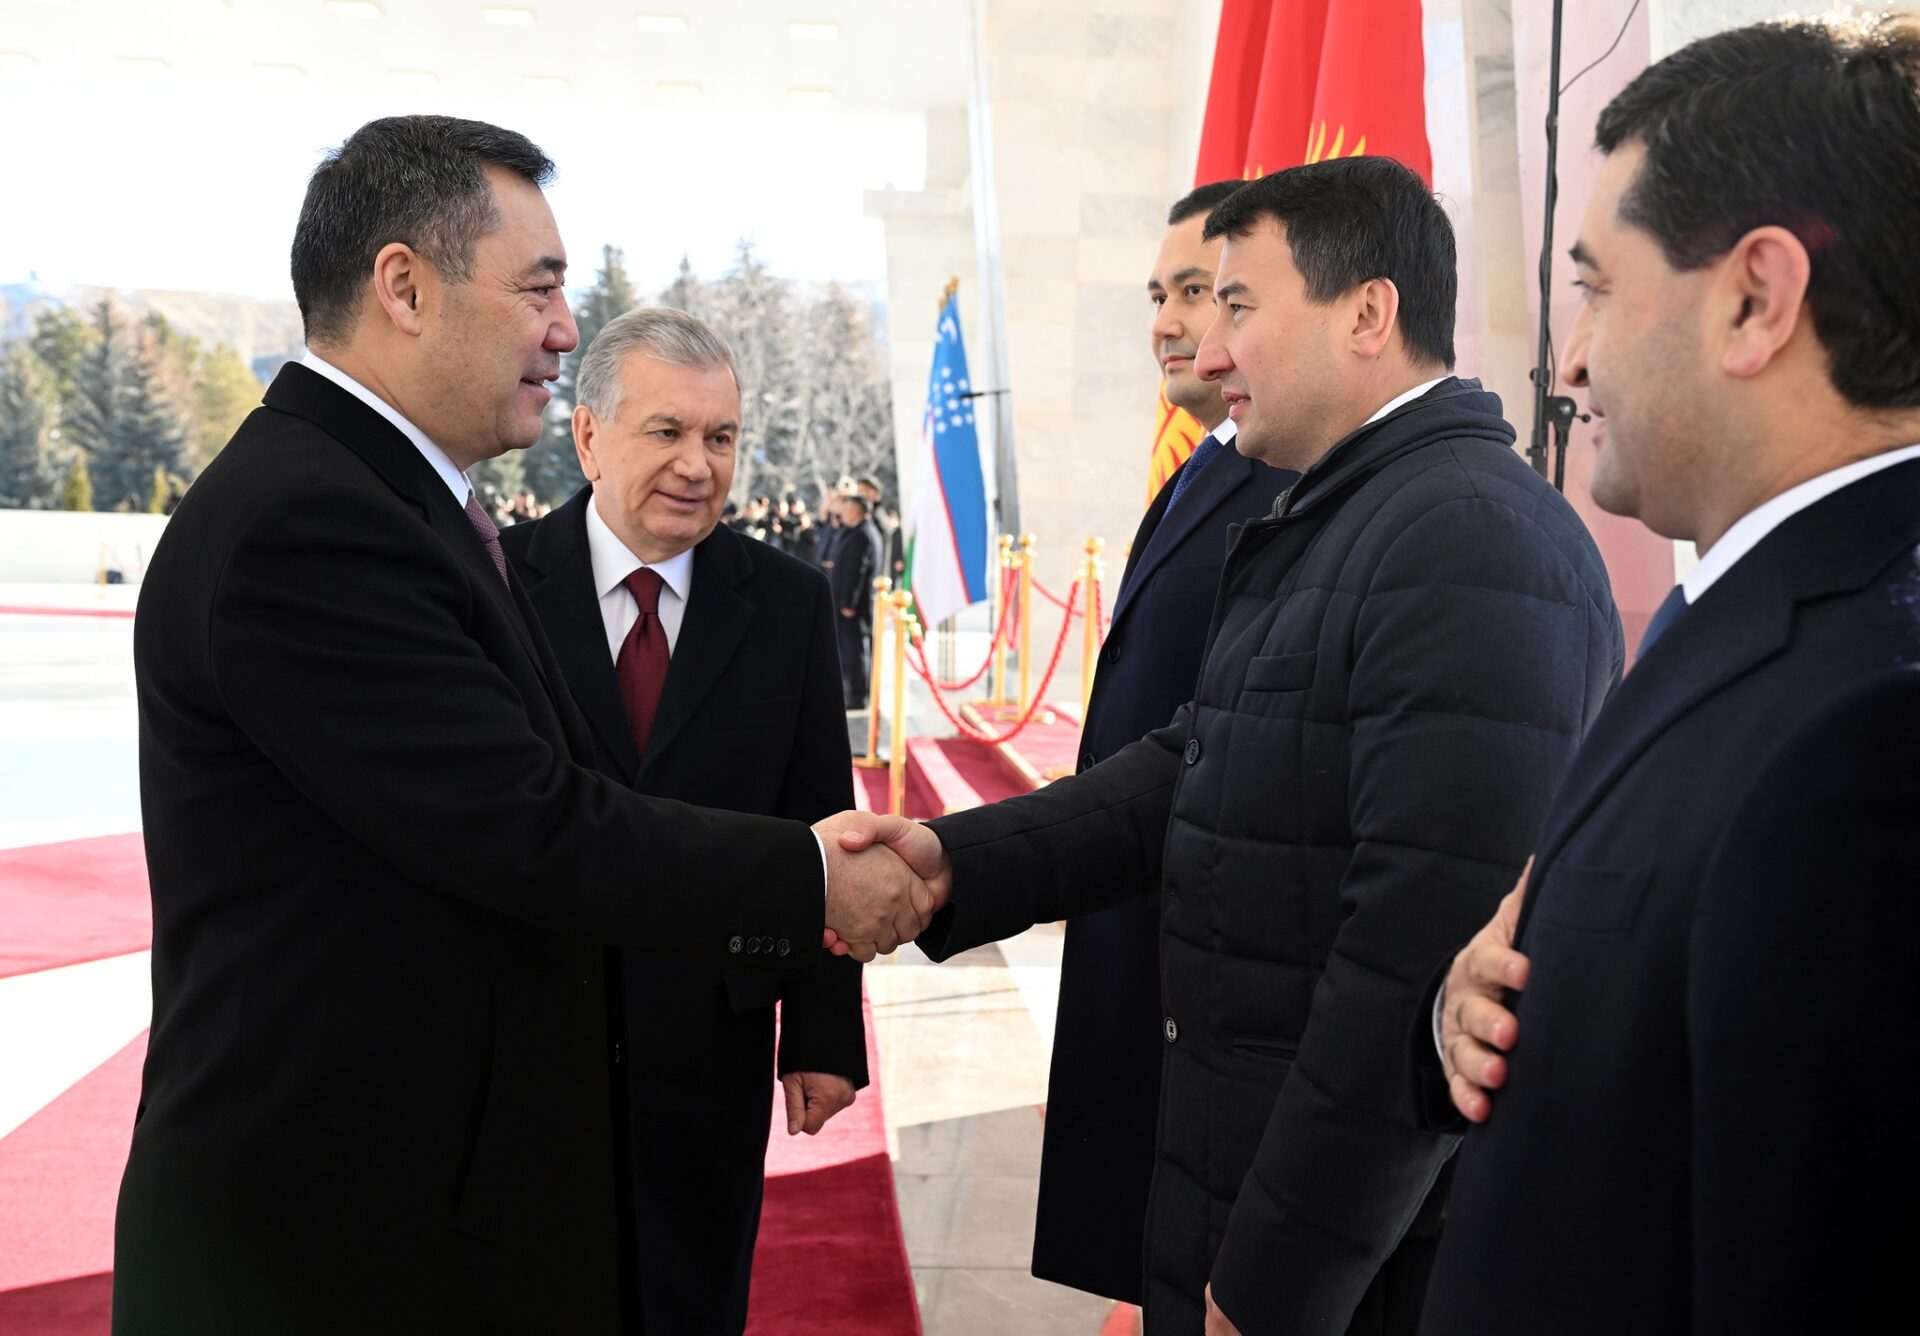 326917713 542583481267007 2754910971378983065 n В Бишкеке состоялась церемония официальной встречи Жапарова и Мирзиёева - фото